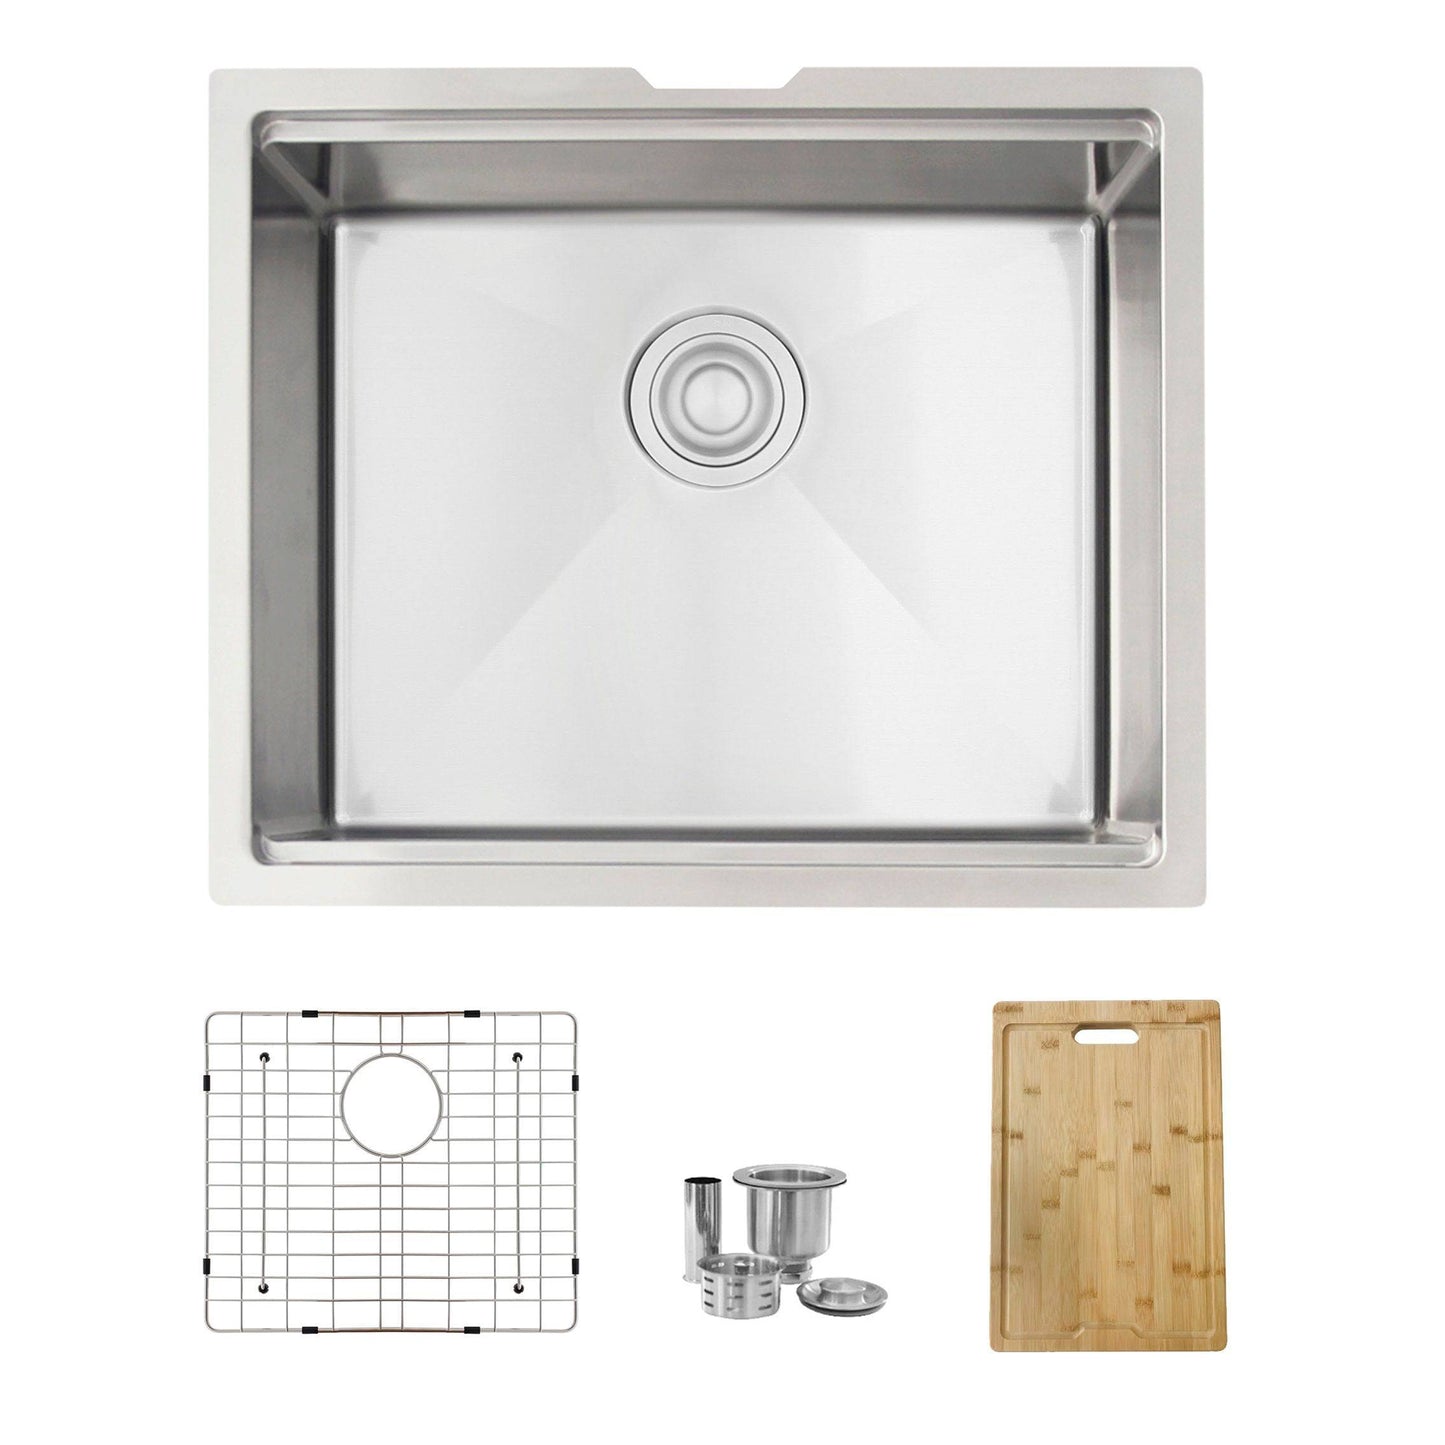 Stylish Versa22 22" x 19" Workstation Single Bowl Undermount 16 Gauge Stainless Steel Kitchen Sink with Built in Accessories S-622W - Renoz